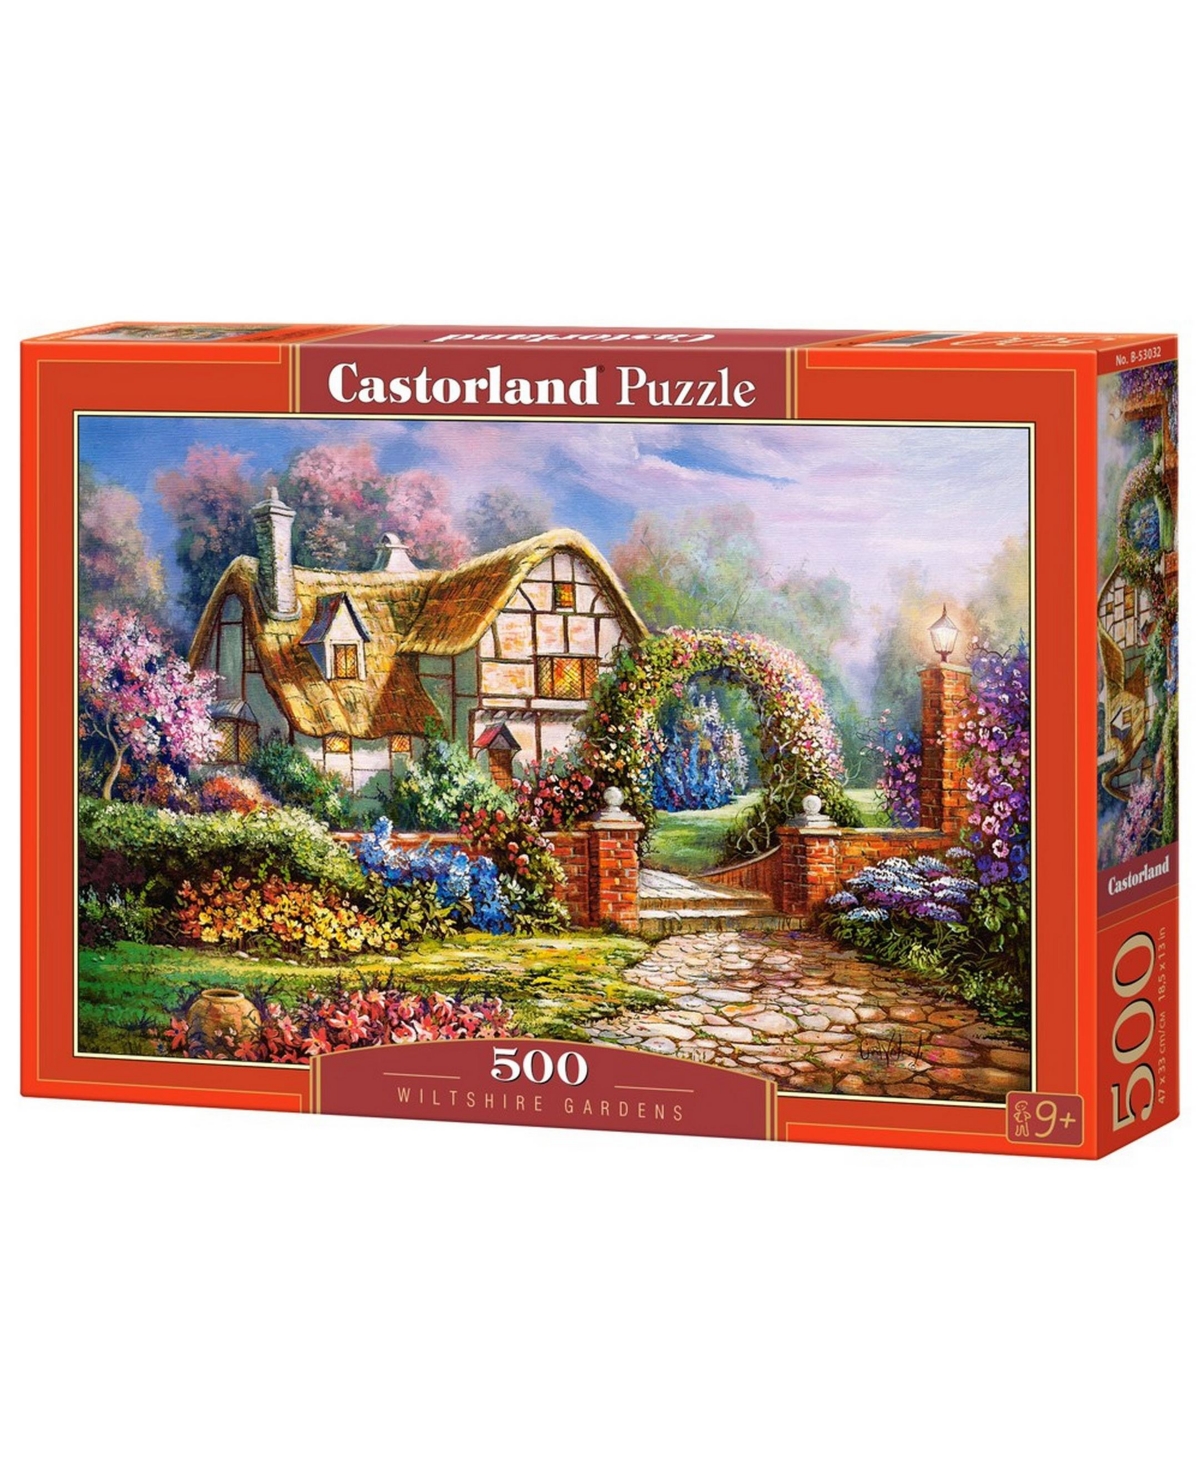 Castorland Wiltshire Gardens Jigsaw Puzzle Set, 500 Piece In Multicolor